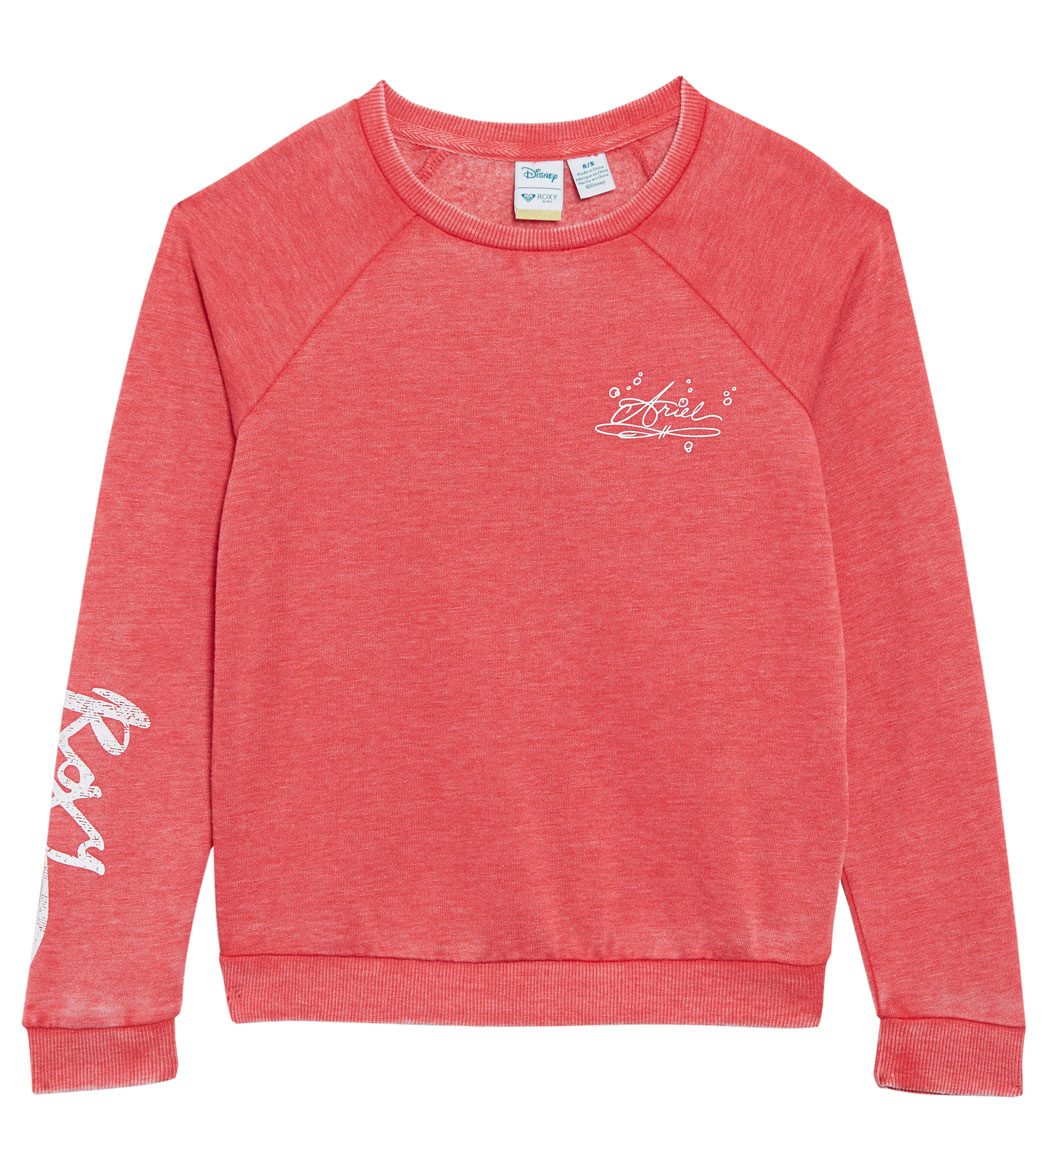 Roxy Disney X Girls' Pompom Fleuri Fleece Shirt Big Kid - Rococco Red Xxl 16 Big Cotton/Polyester - Swimoutlet.com